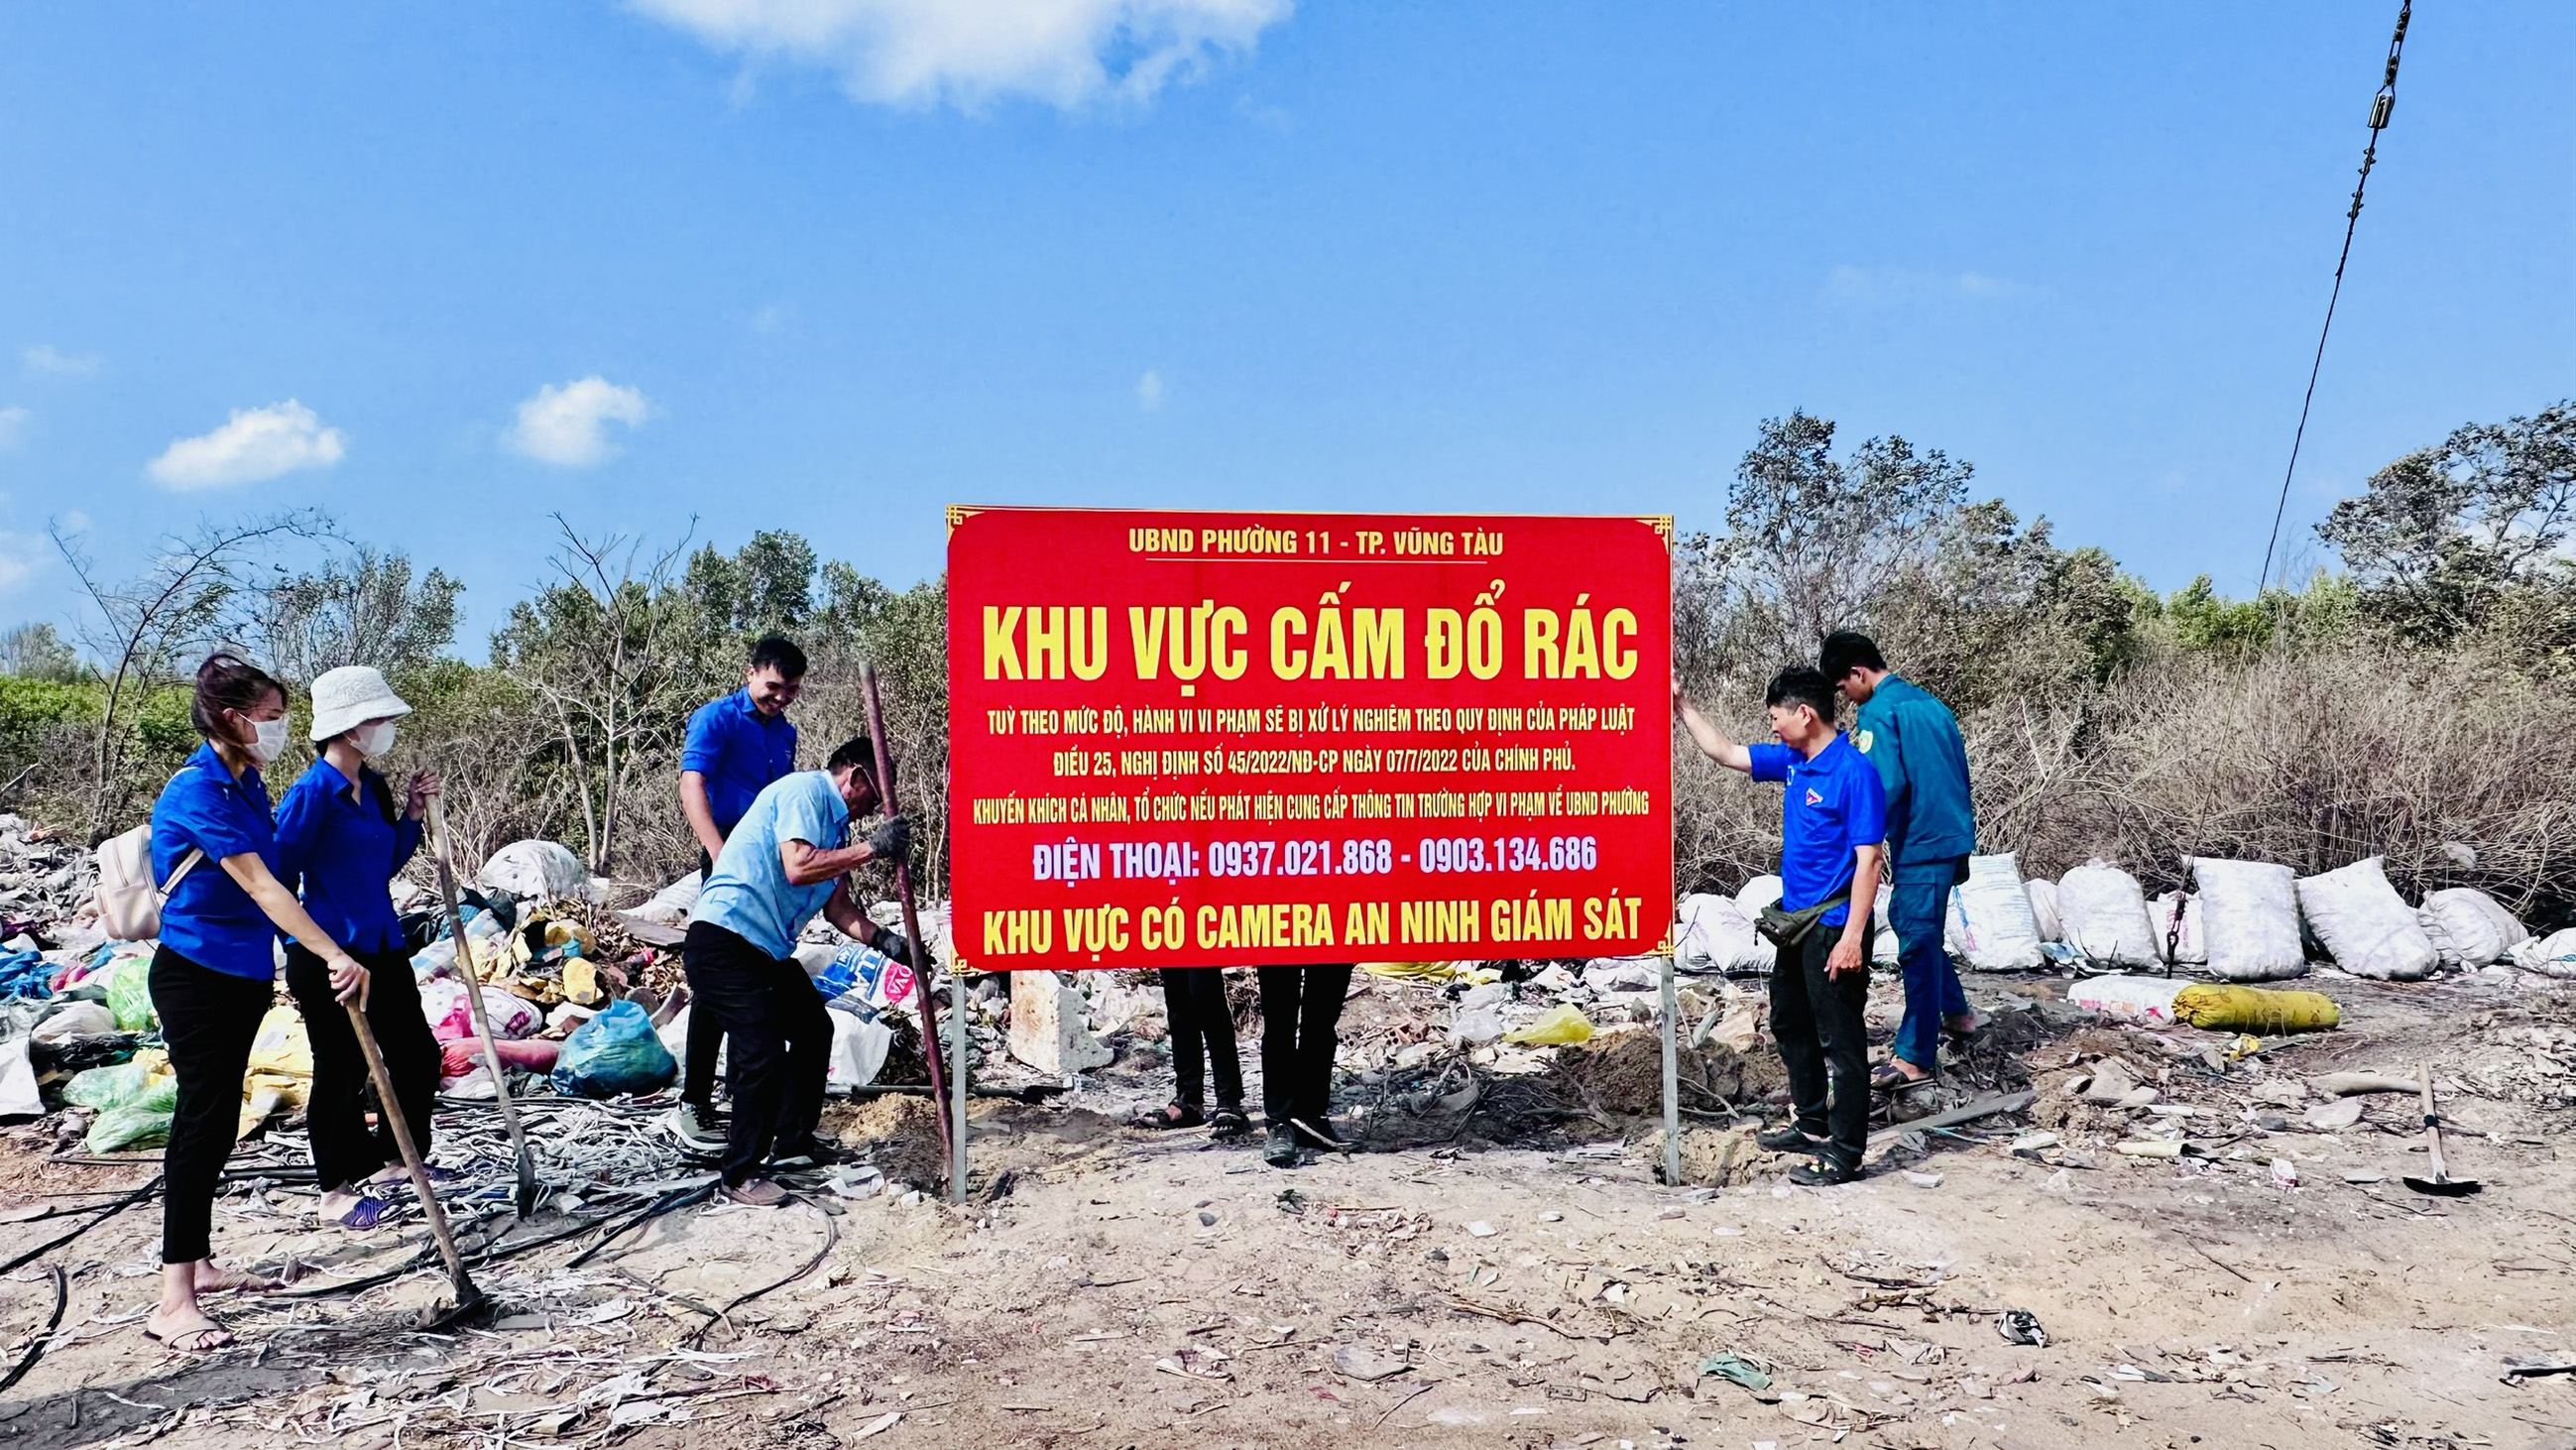 UBND phường 11 tổ chức dọn dẹp bãi rác tự phát và cắm bảng cấm đổ rác, gắn camera giám sát khu vực đường Đô Lương, đường vào Trại Nhái.